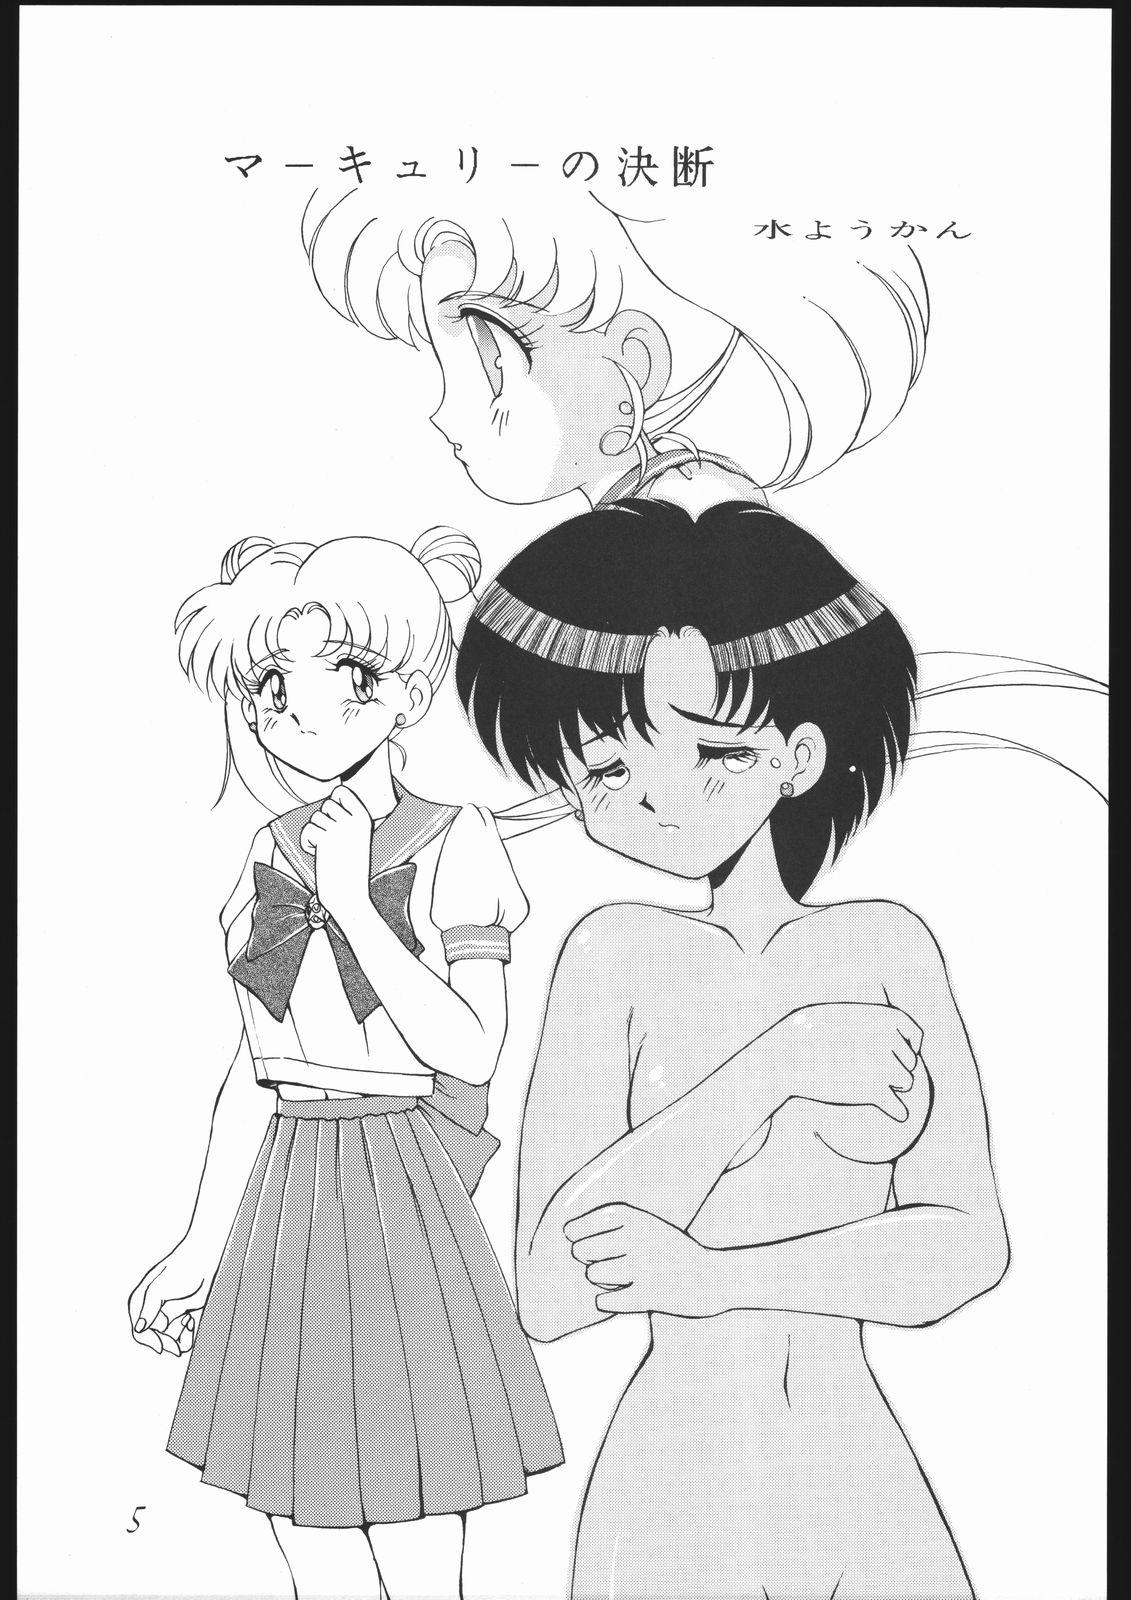 8teenxxx Moon Light Romance - Sailor moon Pasivo - Page 11